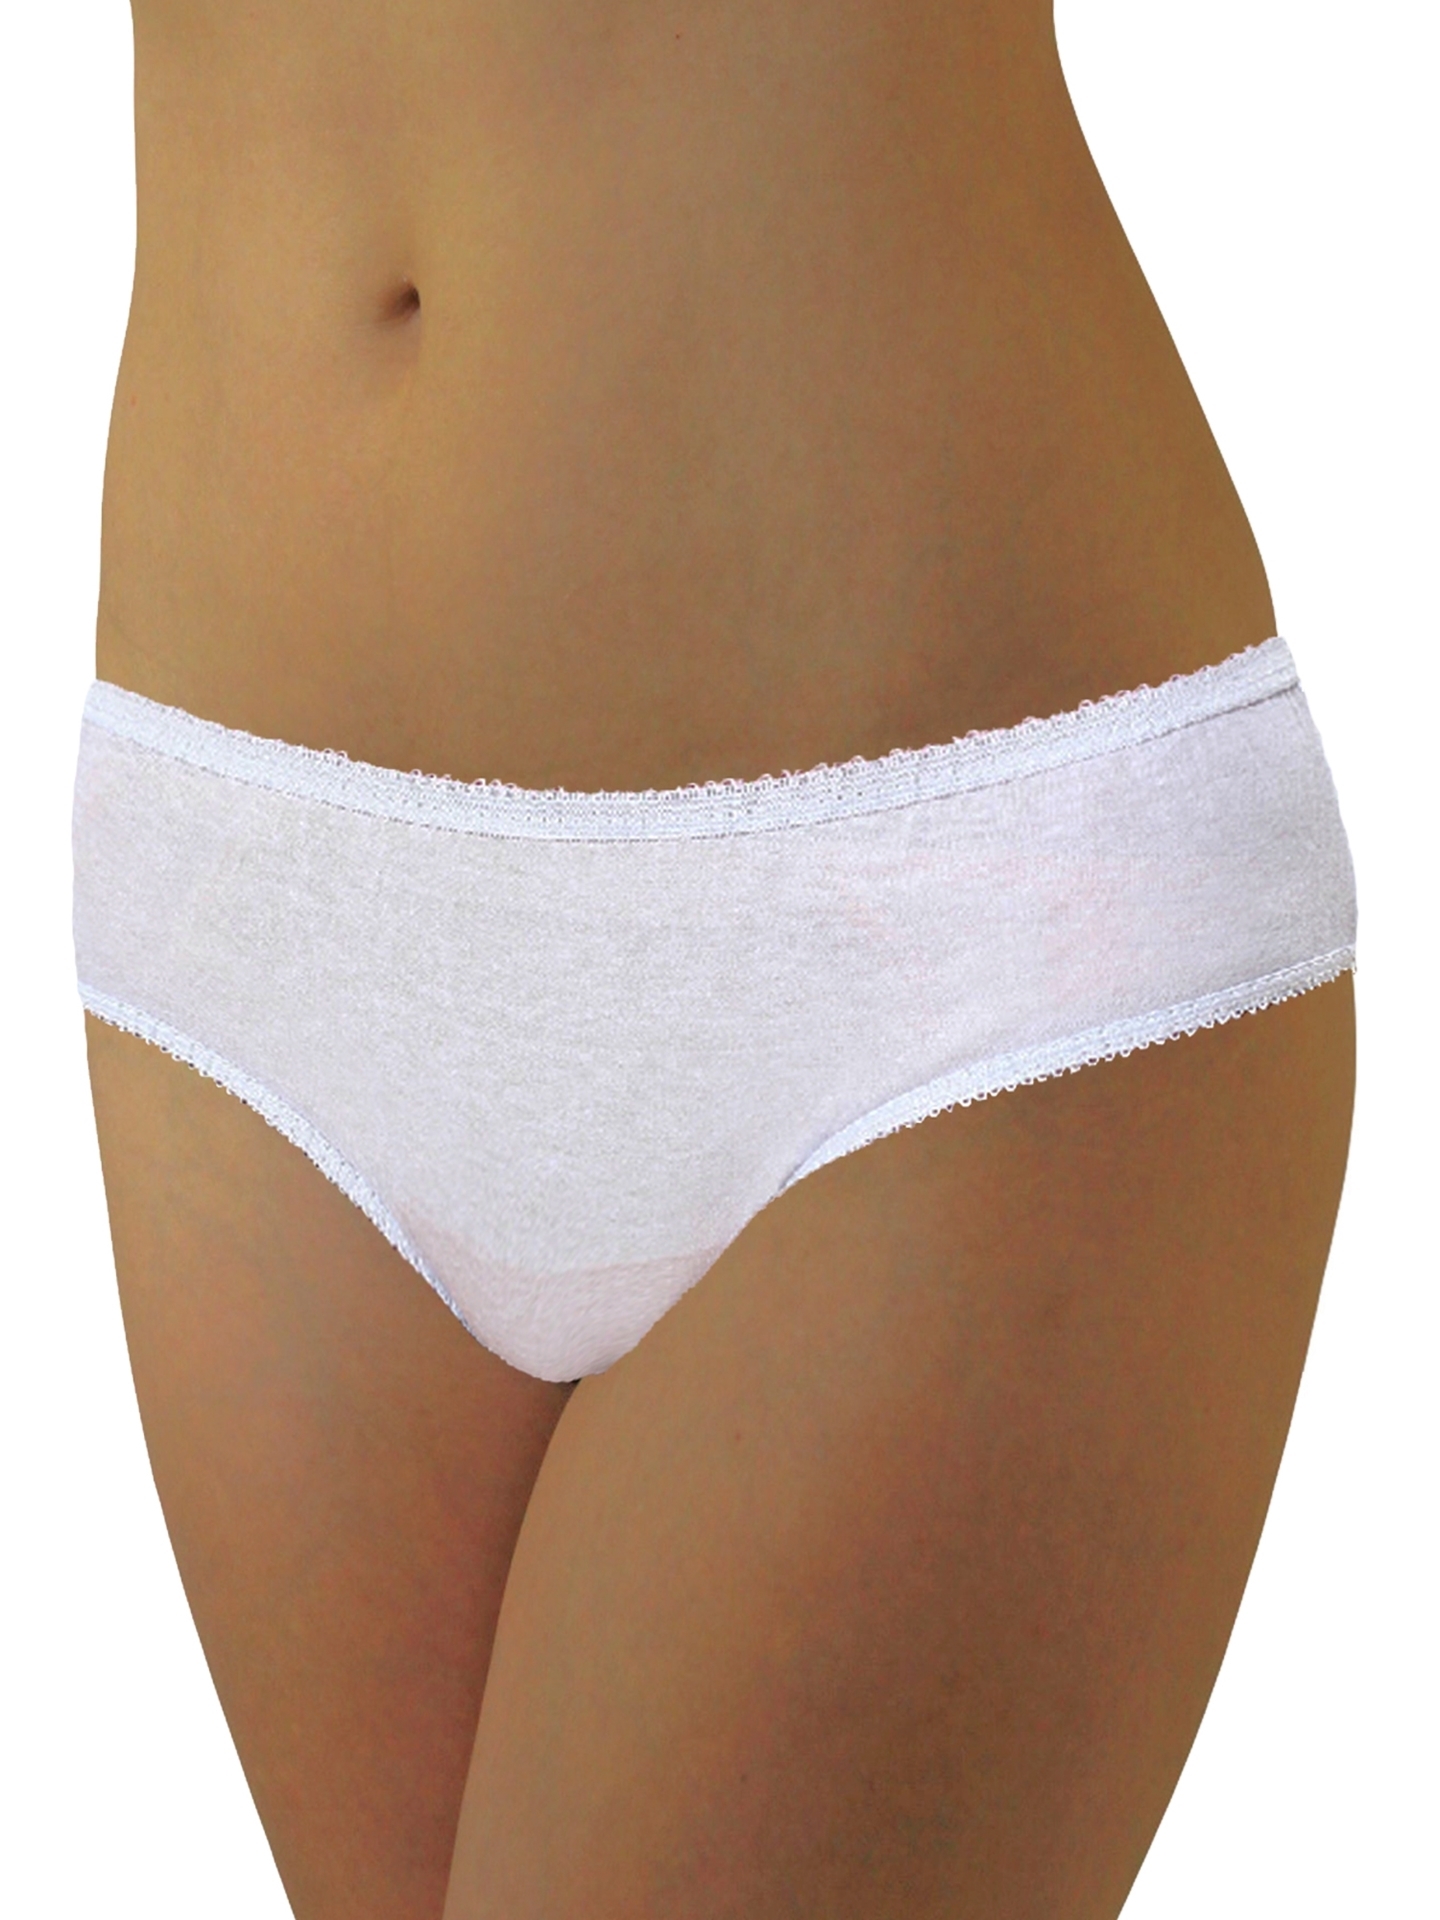 Fashion Ladies Panties Cotton Underwear 7 Pcs Disposable Panties